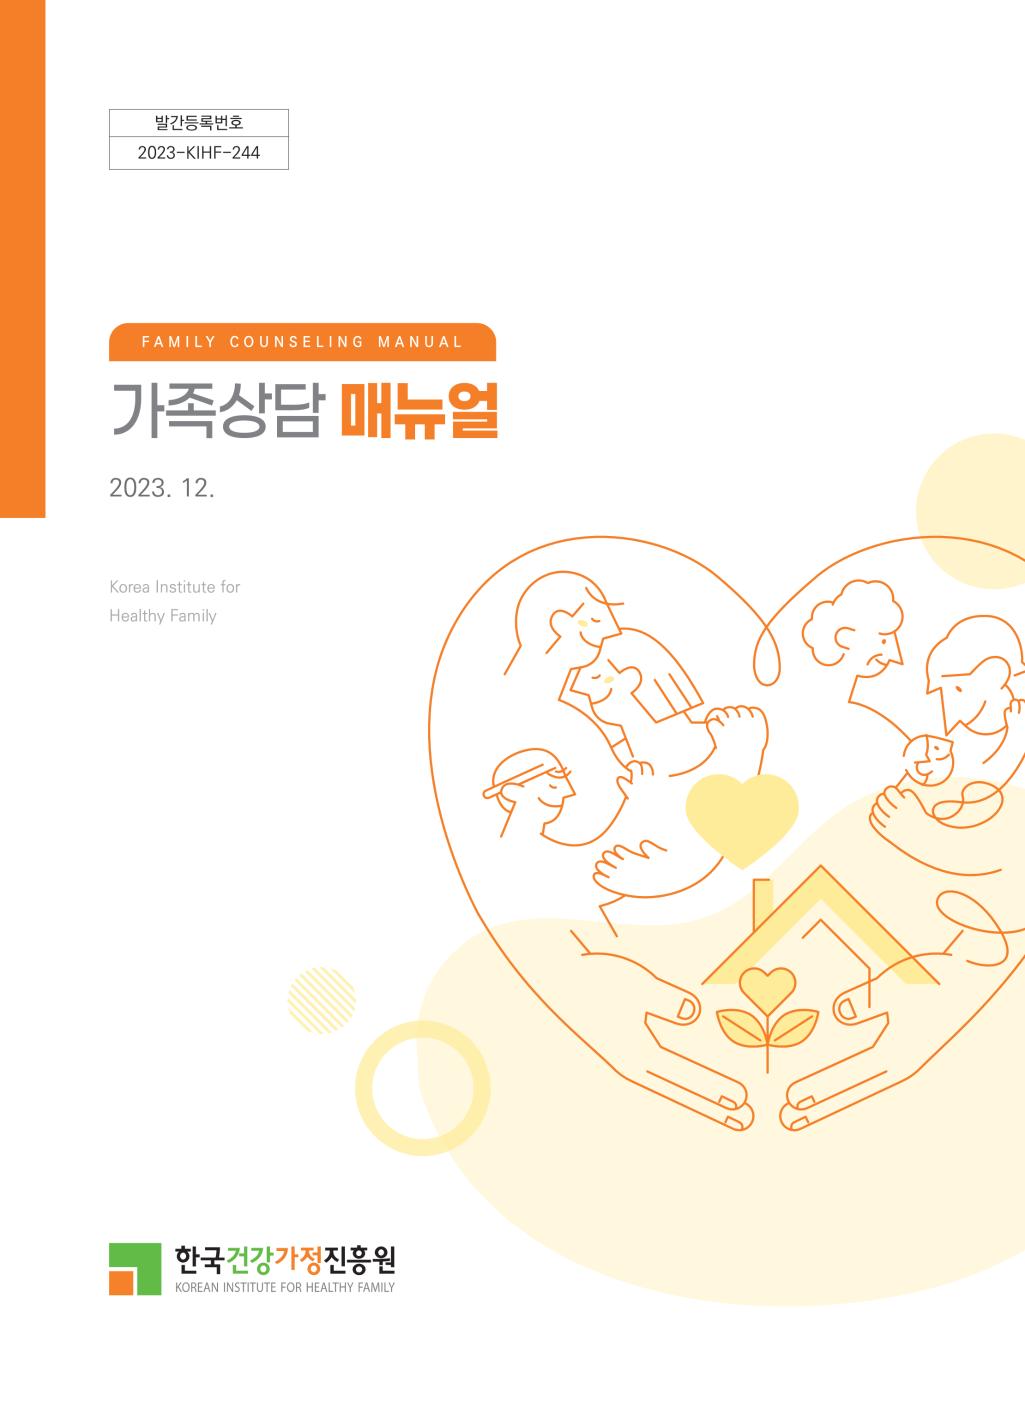 발간등록번호 2023-KIHF-244 FAMILY COUNSELING MANUAL 가족상담 매뉴얼 2023. 12. Korea Institute for Healthy Famiy 한국건강가정진흥원